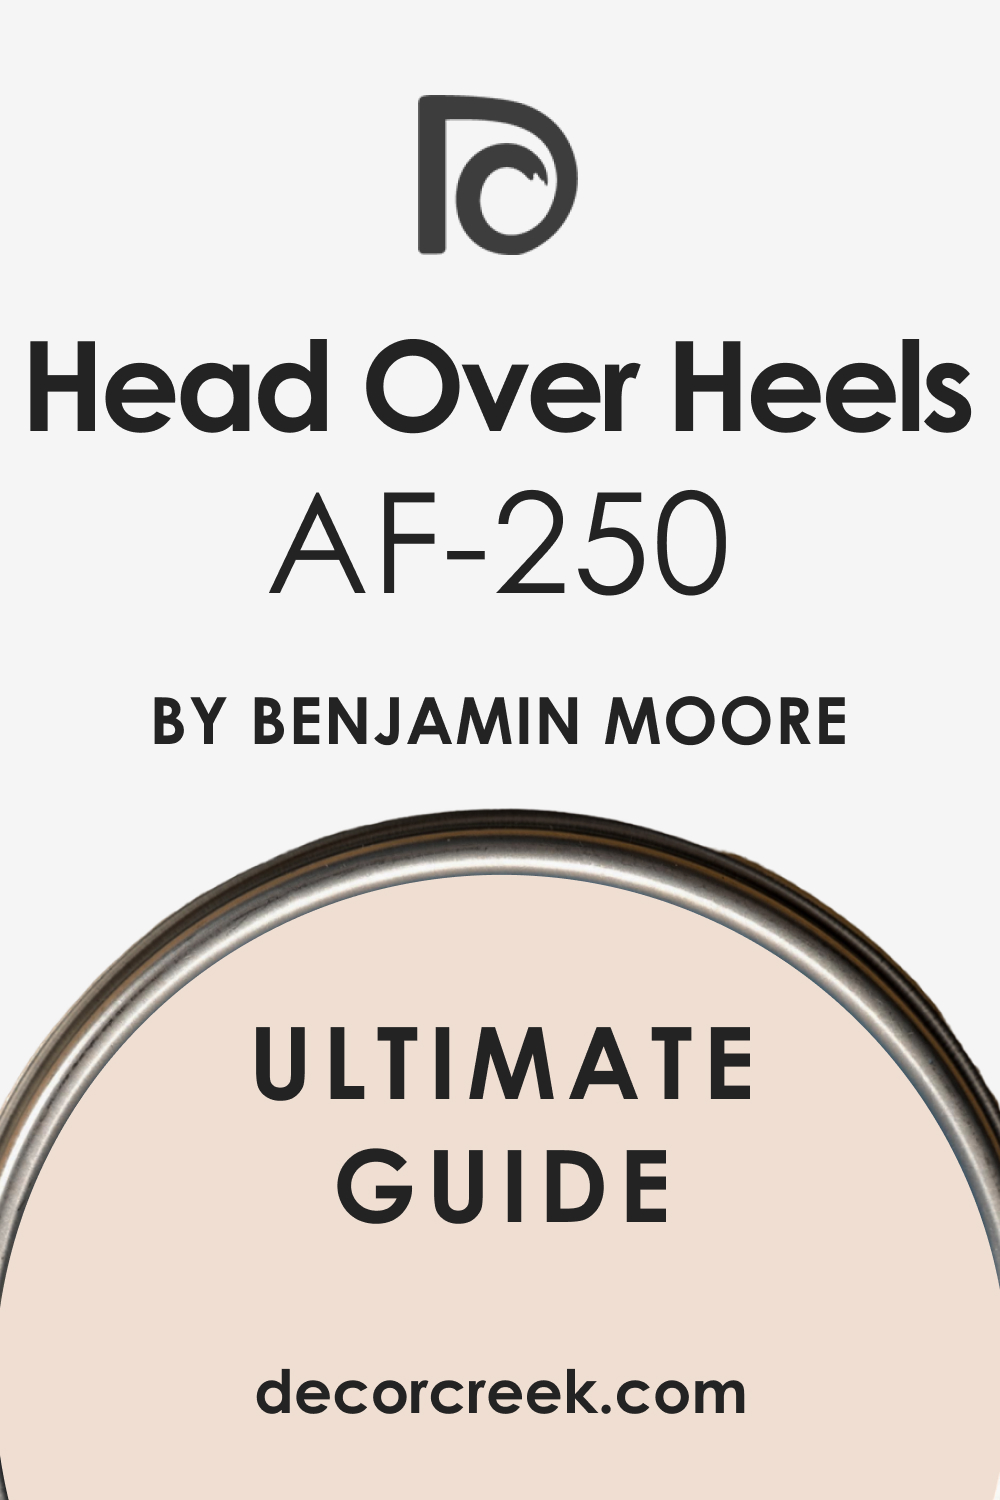 Ultimate Guide of Head Over Heels AF-250 